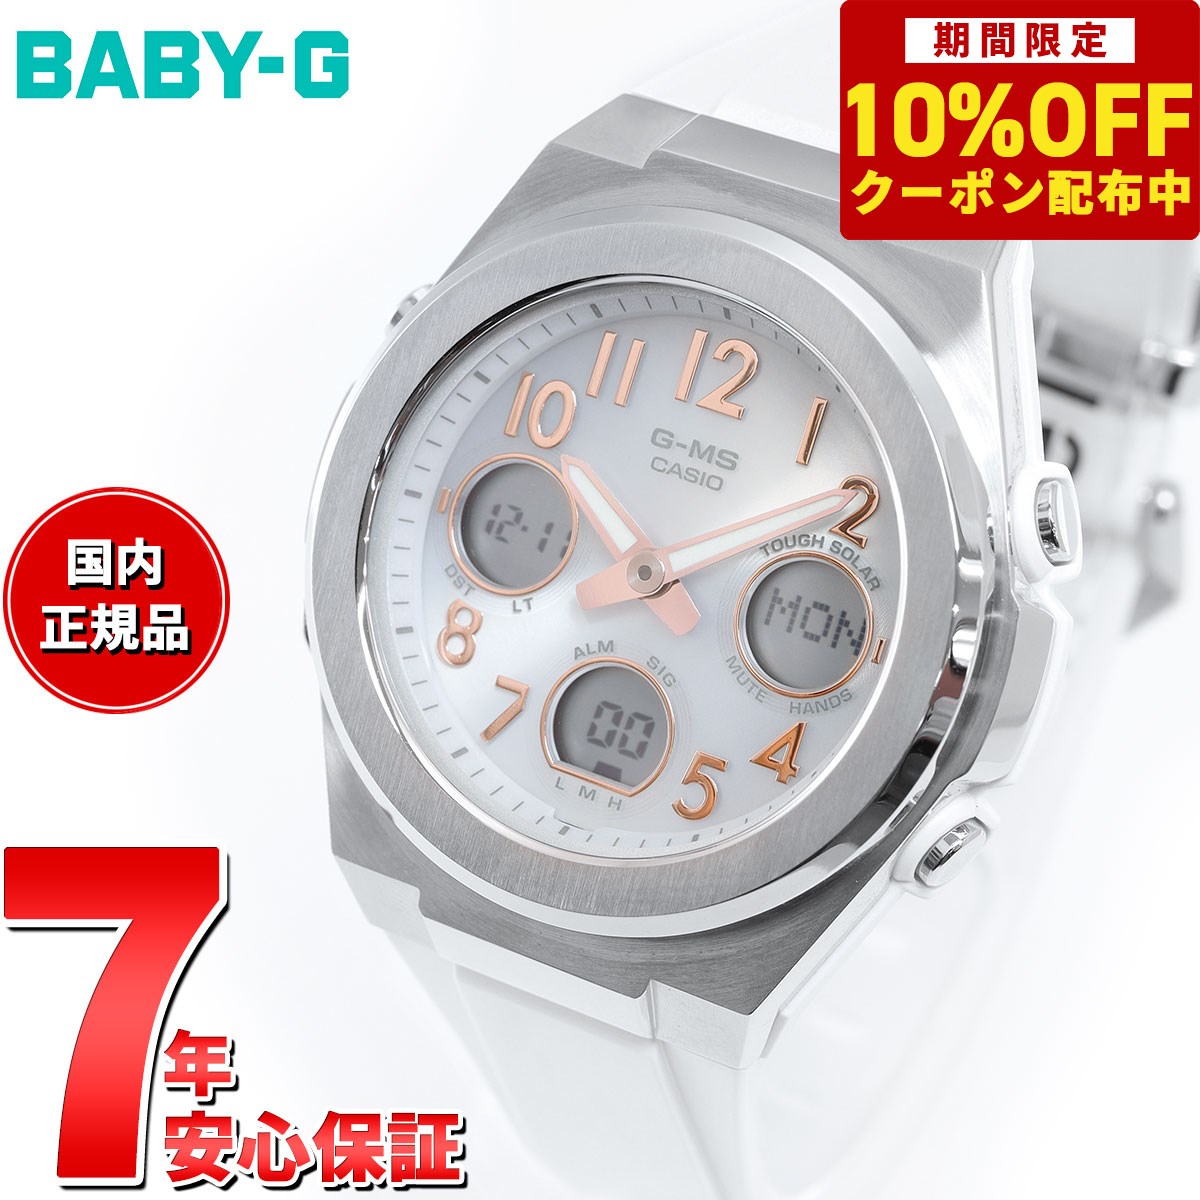 カシオ Baby-G 腕時計（メンズ） 【10%OFFクーポン！＆店内ポイント最大41倍！5月18日！】BABY-G カシオ ベビーG レディース G-MS 電波 ソーラー 腕時計 タフソーラー MSG-W610-7AJF シルバー ホワイト